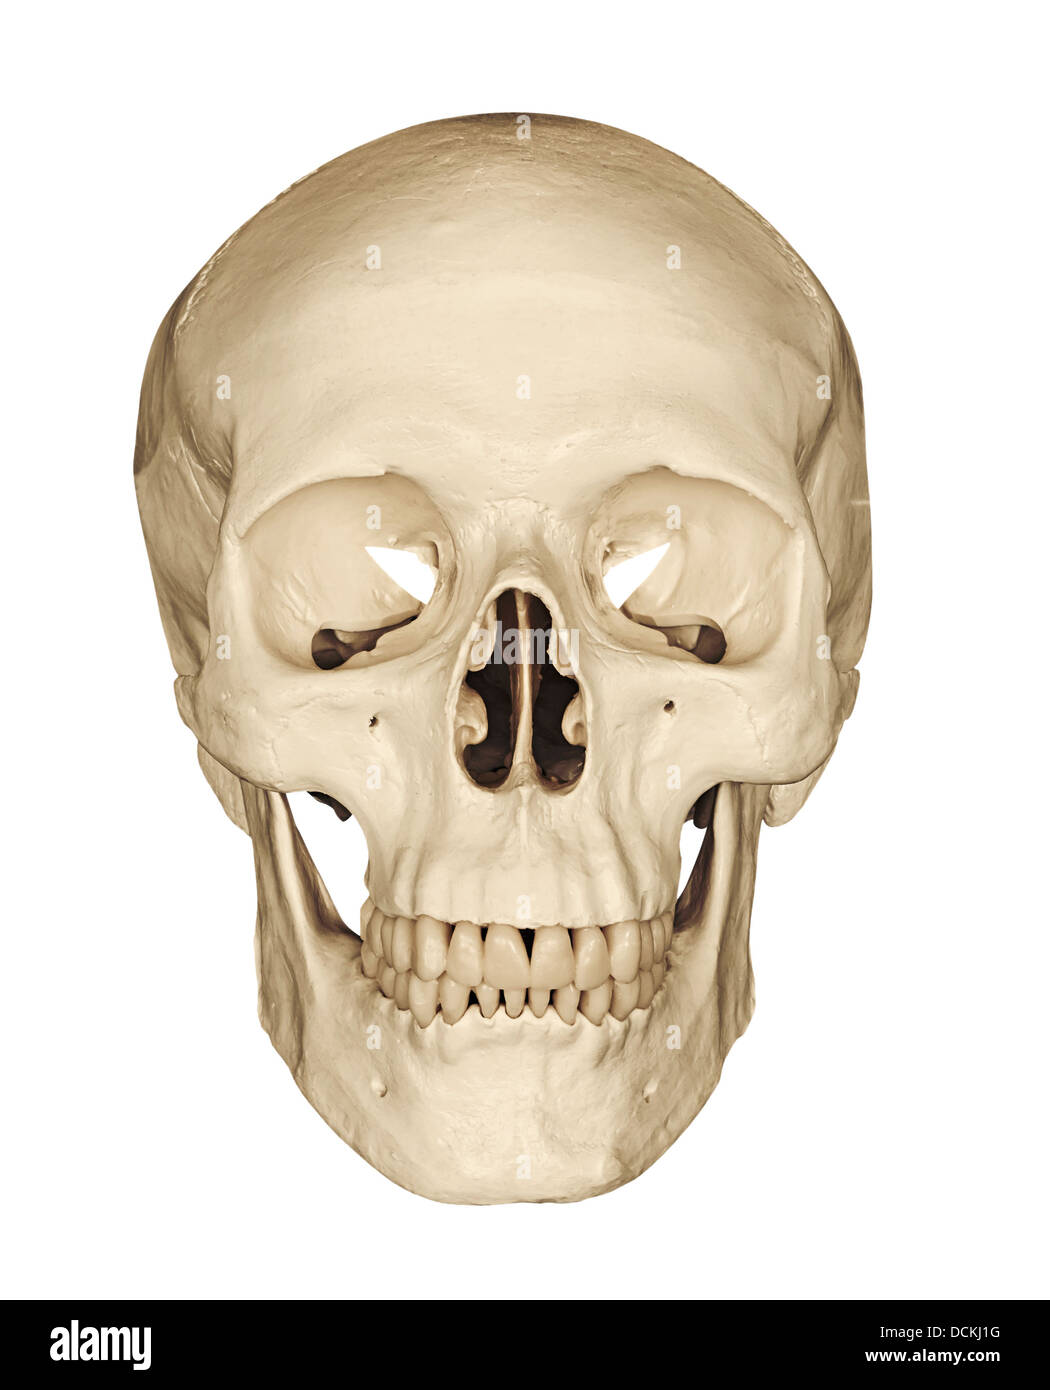 Cranio umano scheletrico isolato di testa contro uno sfondo bianco Foto Stock